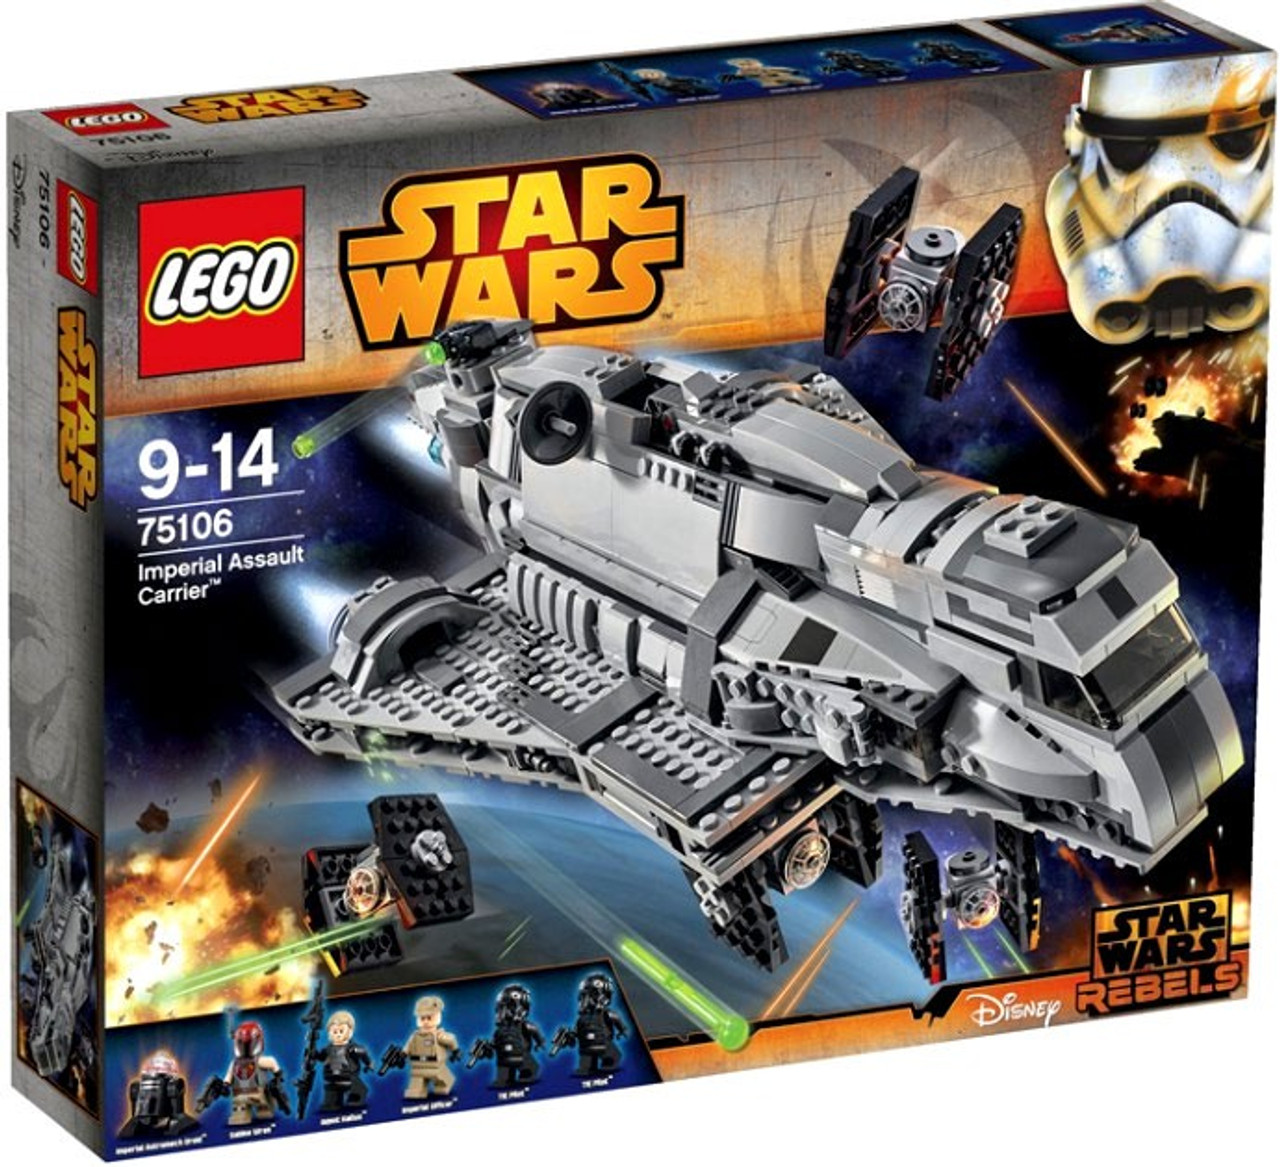 LEGO Star Wars Rebels Imperial Assault Carrier Set 75106 ...